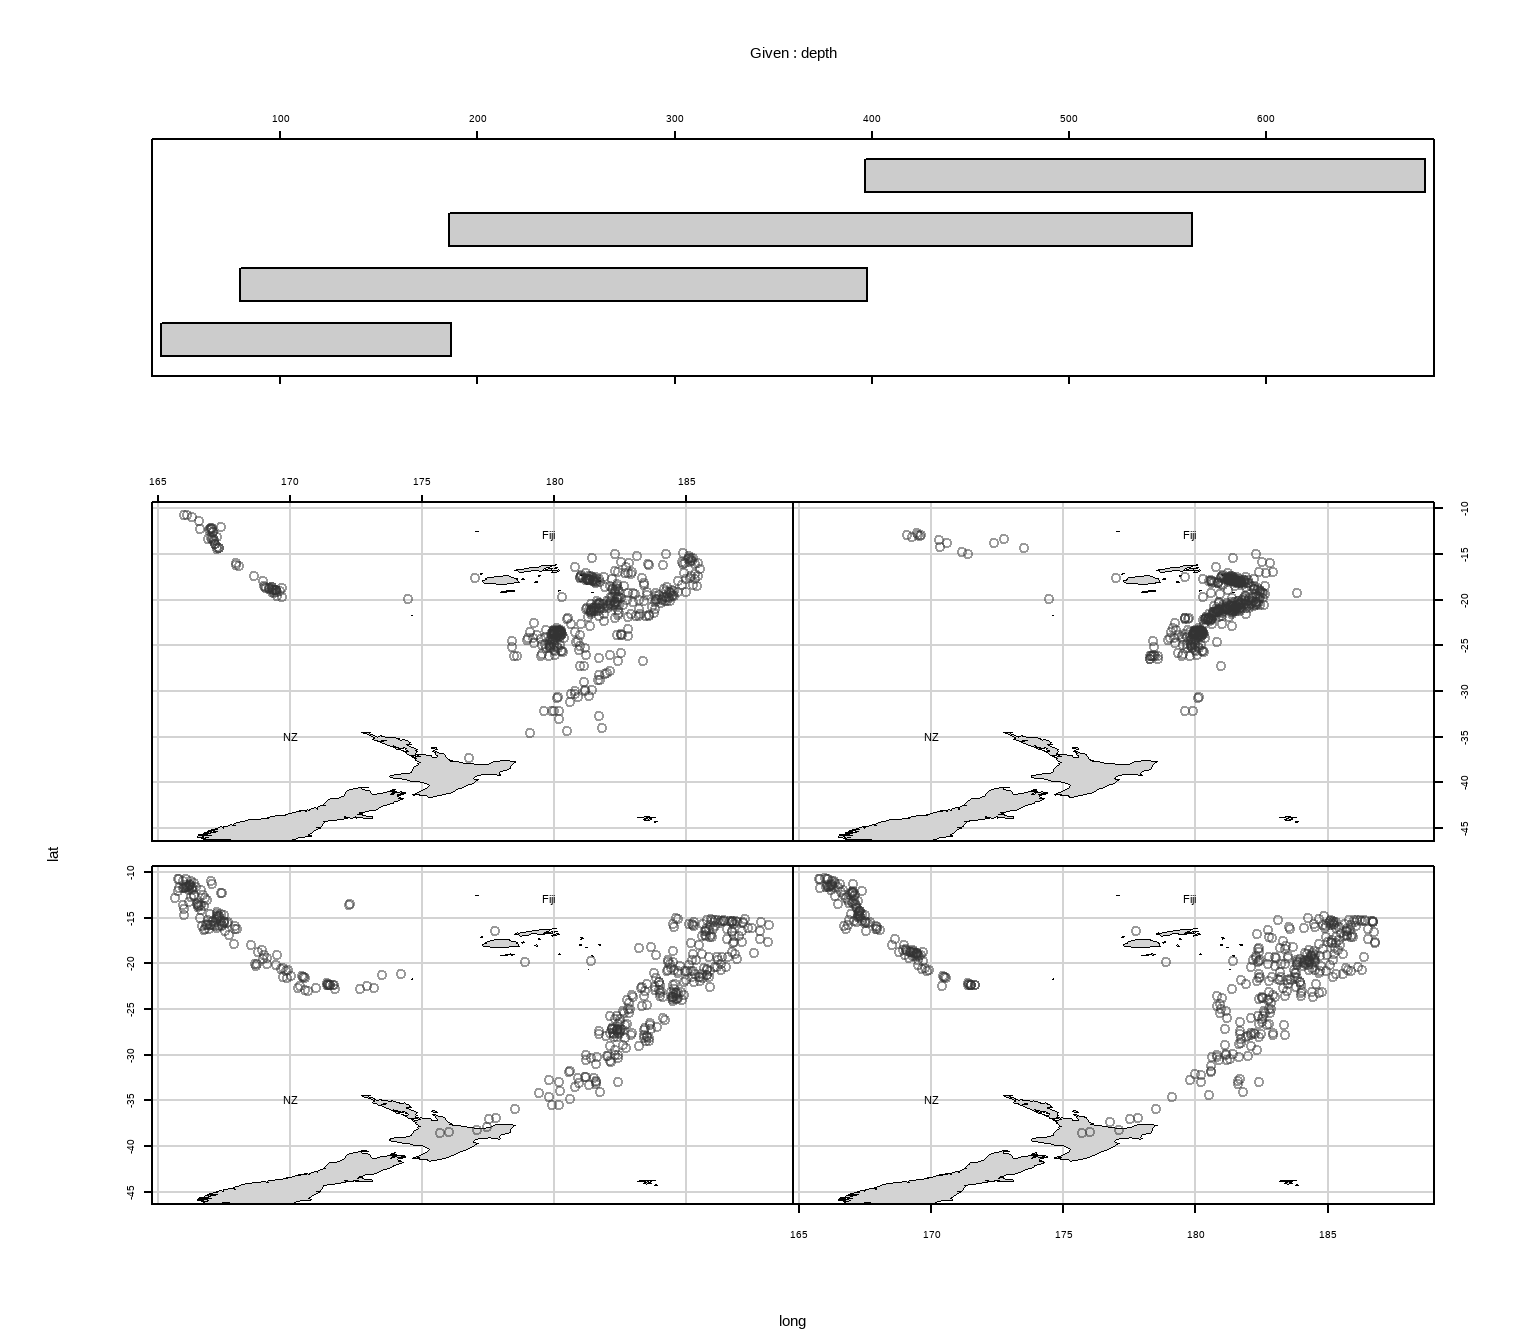 给定震源深图的地震经纬度条件分割图：四幅散点图有相同的坐标系，震源深度按左下、右下、左上、右上的顺序逐渐增加，可以看到地震发生地点逐渐在向斐济岛靠近。